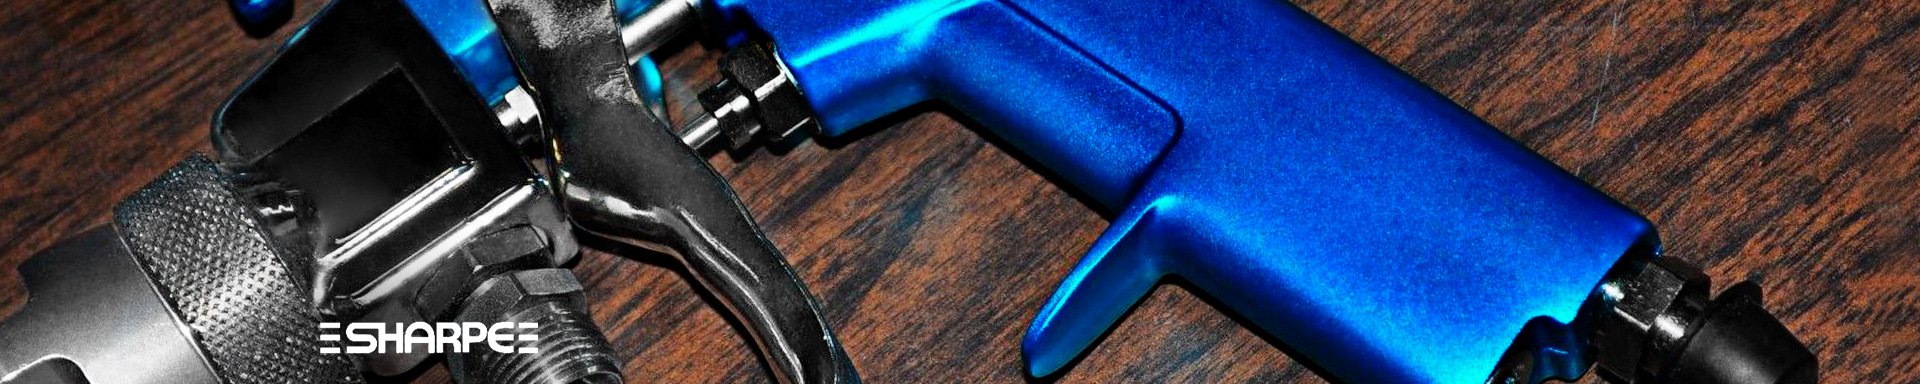 Sharpe Spray Guns Air Tools Accessories